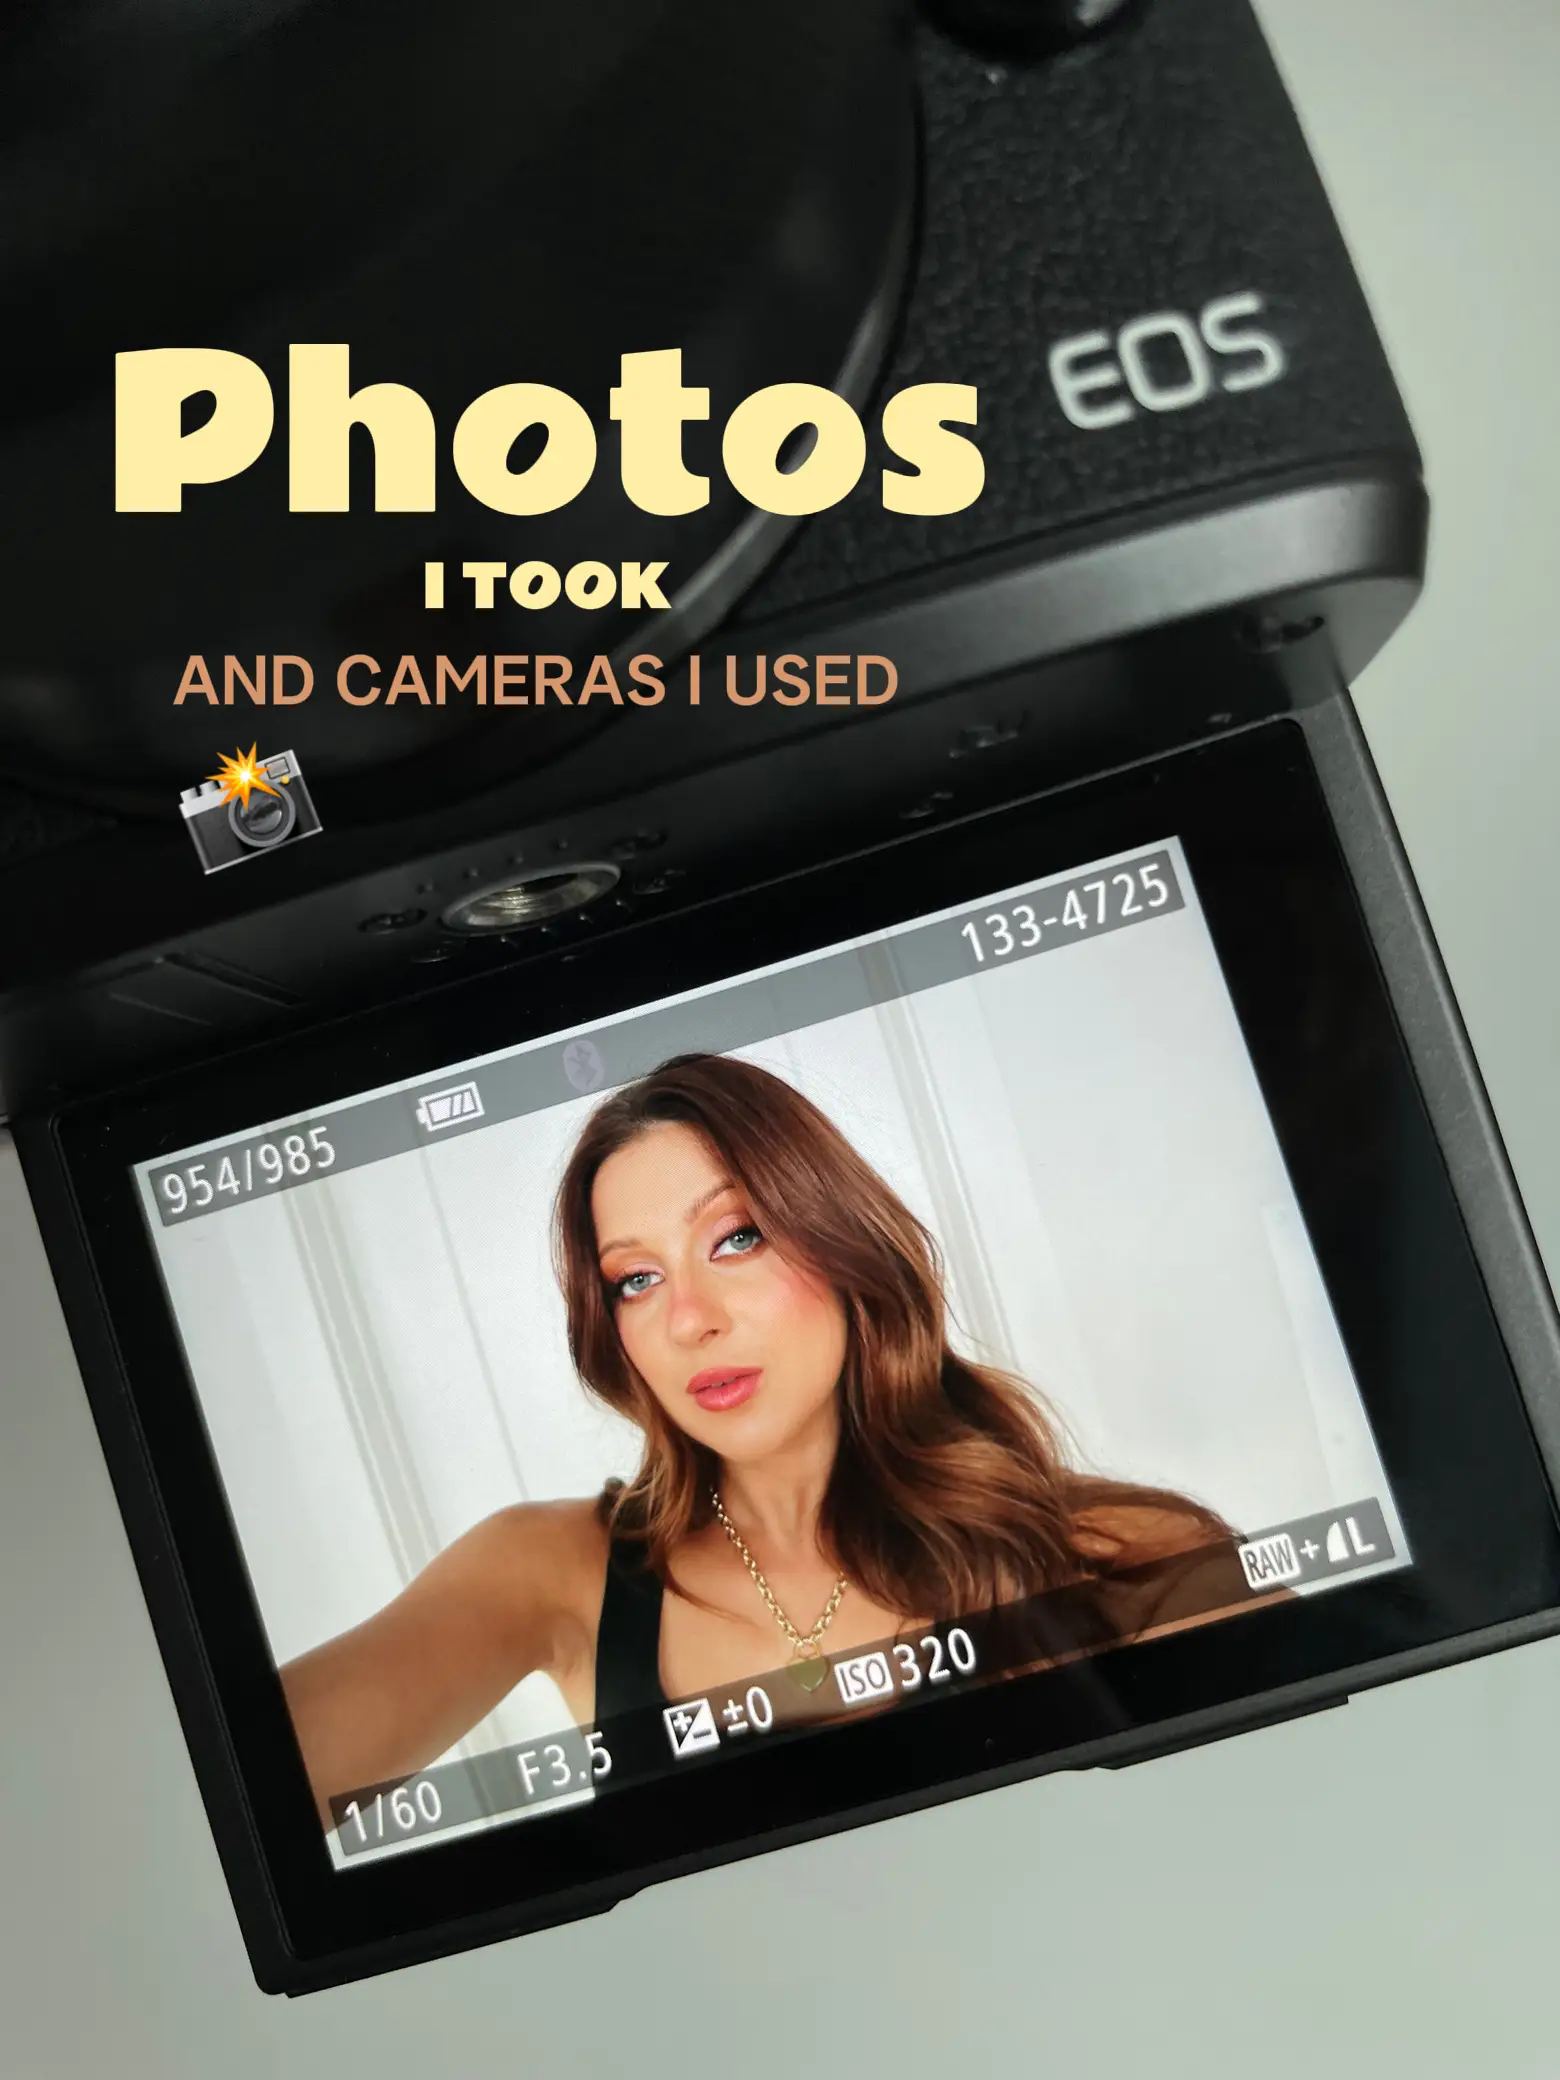 Kodak Ektar H35: A Photoshoot with Courtney Carl